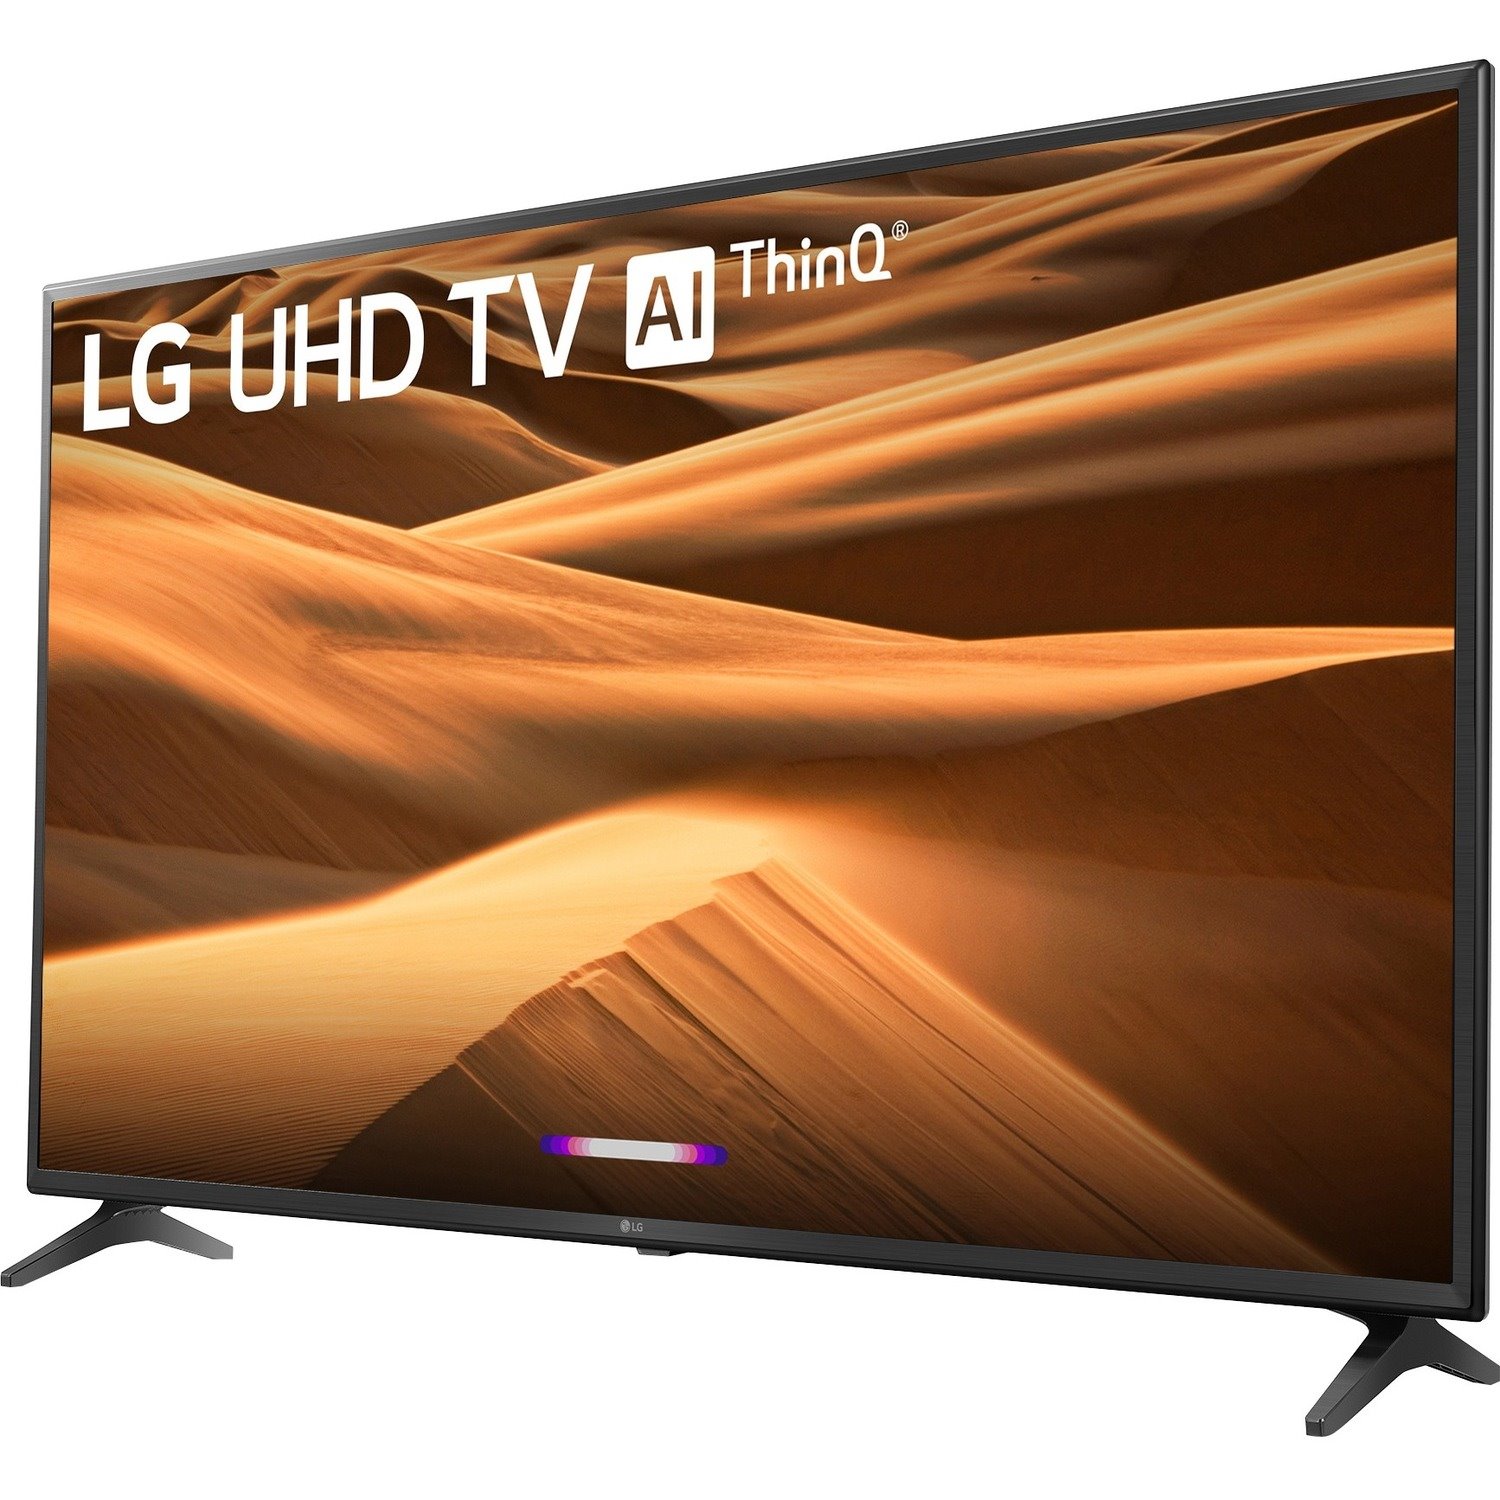 LG UM7100 49UM7100PLB 123 cm Smart LED-LCD TV - 4K UHDTV